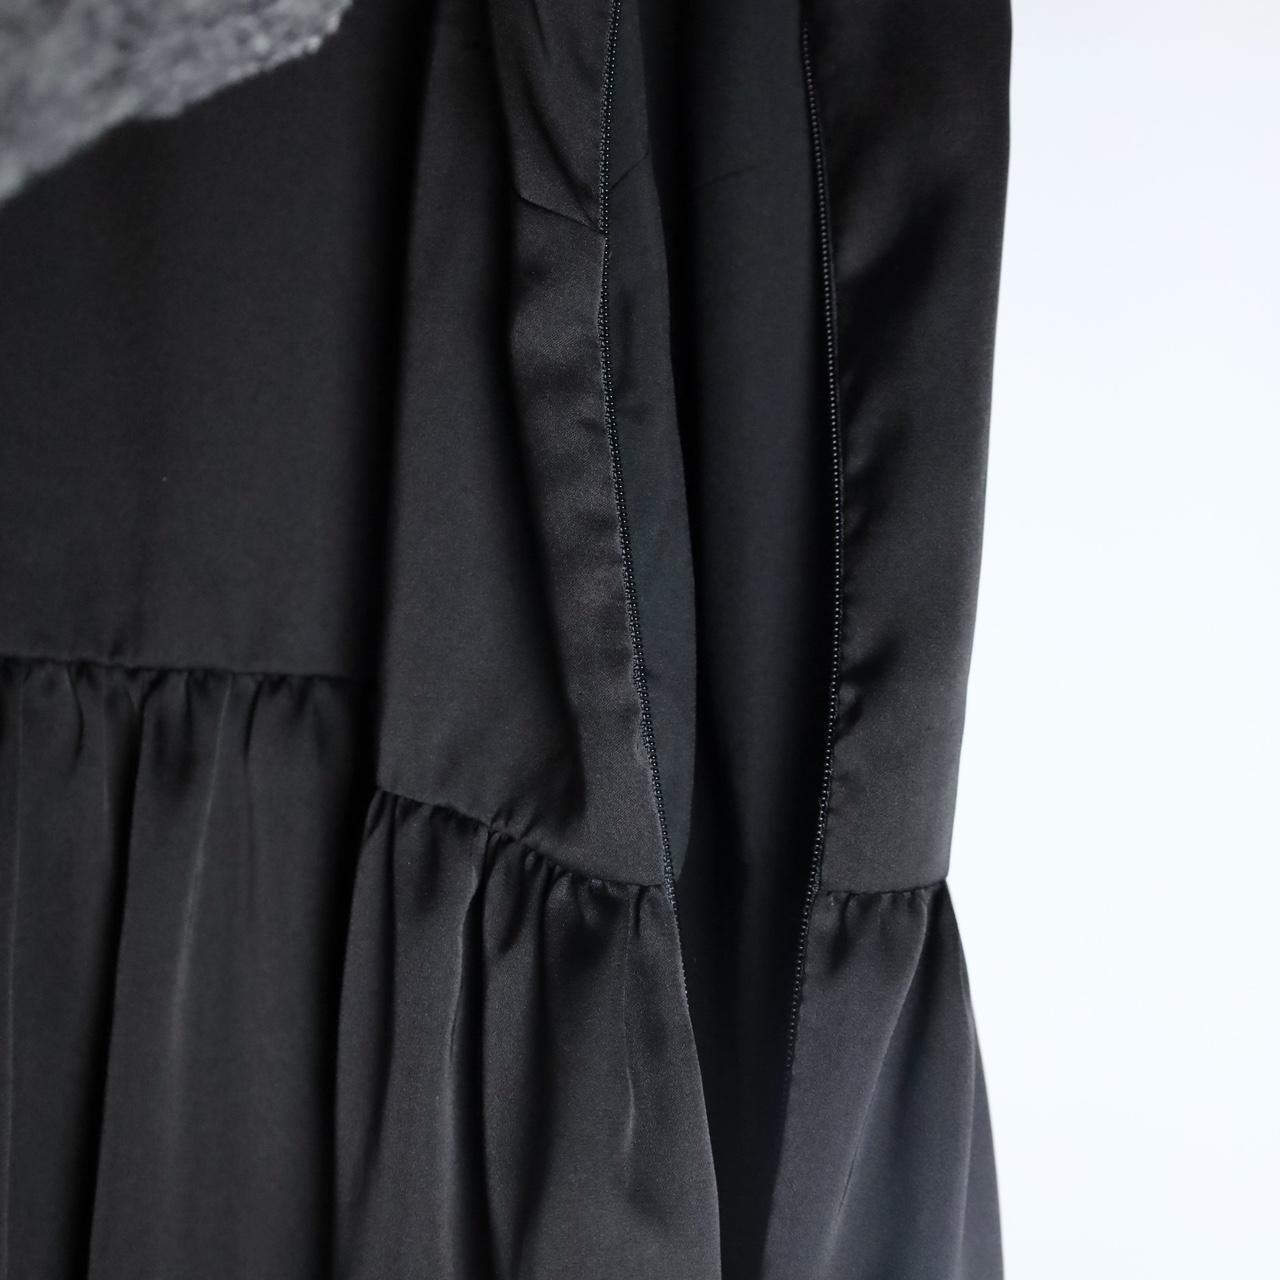 Frank & Oak Solid Black Satin Halter Dress